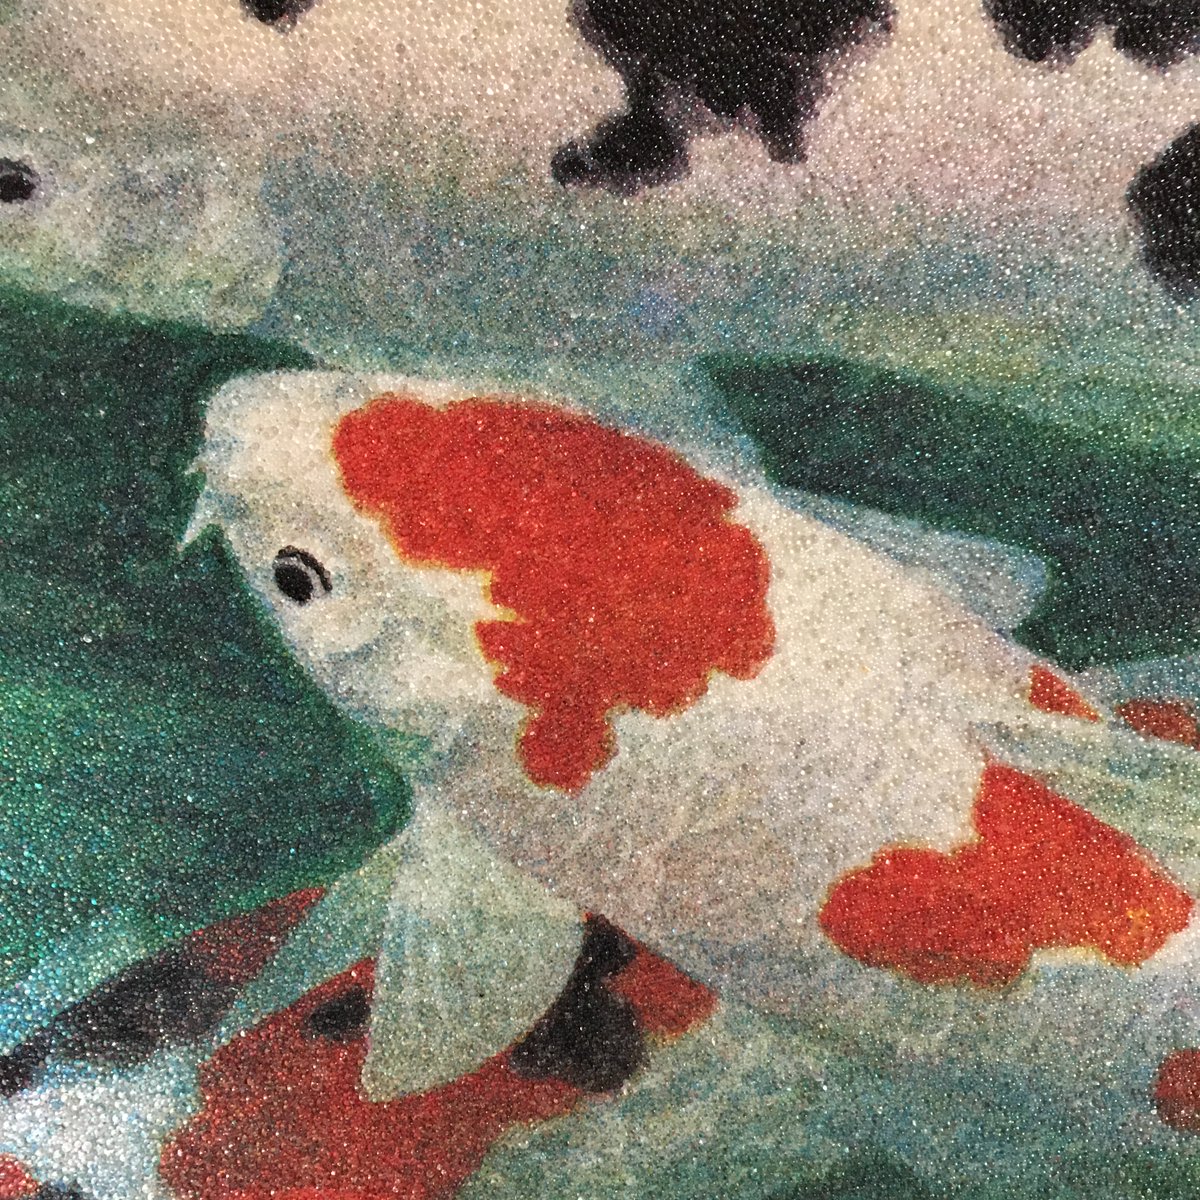 東洋九十九ベィホテル どこかの客室に飾られている こちらの名画 目にも涼しげ 鯉が描かれています ちょっとジャリジャリした 砂絵のような質感 キラキラして綺麗です T Co Cvmoqzvsjp Twitter